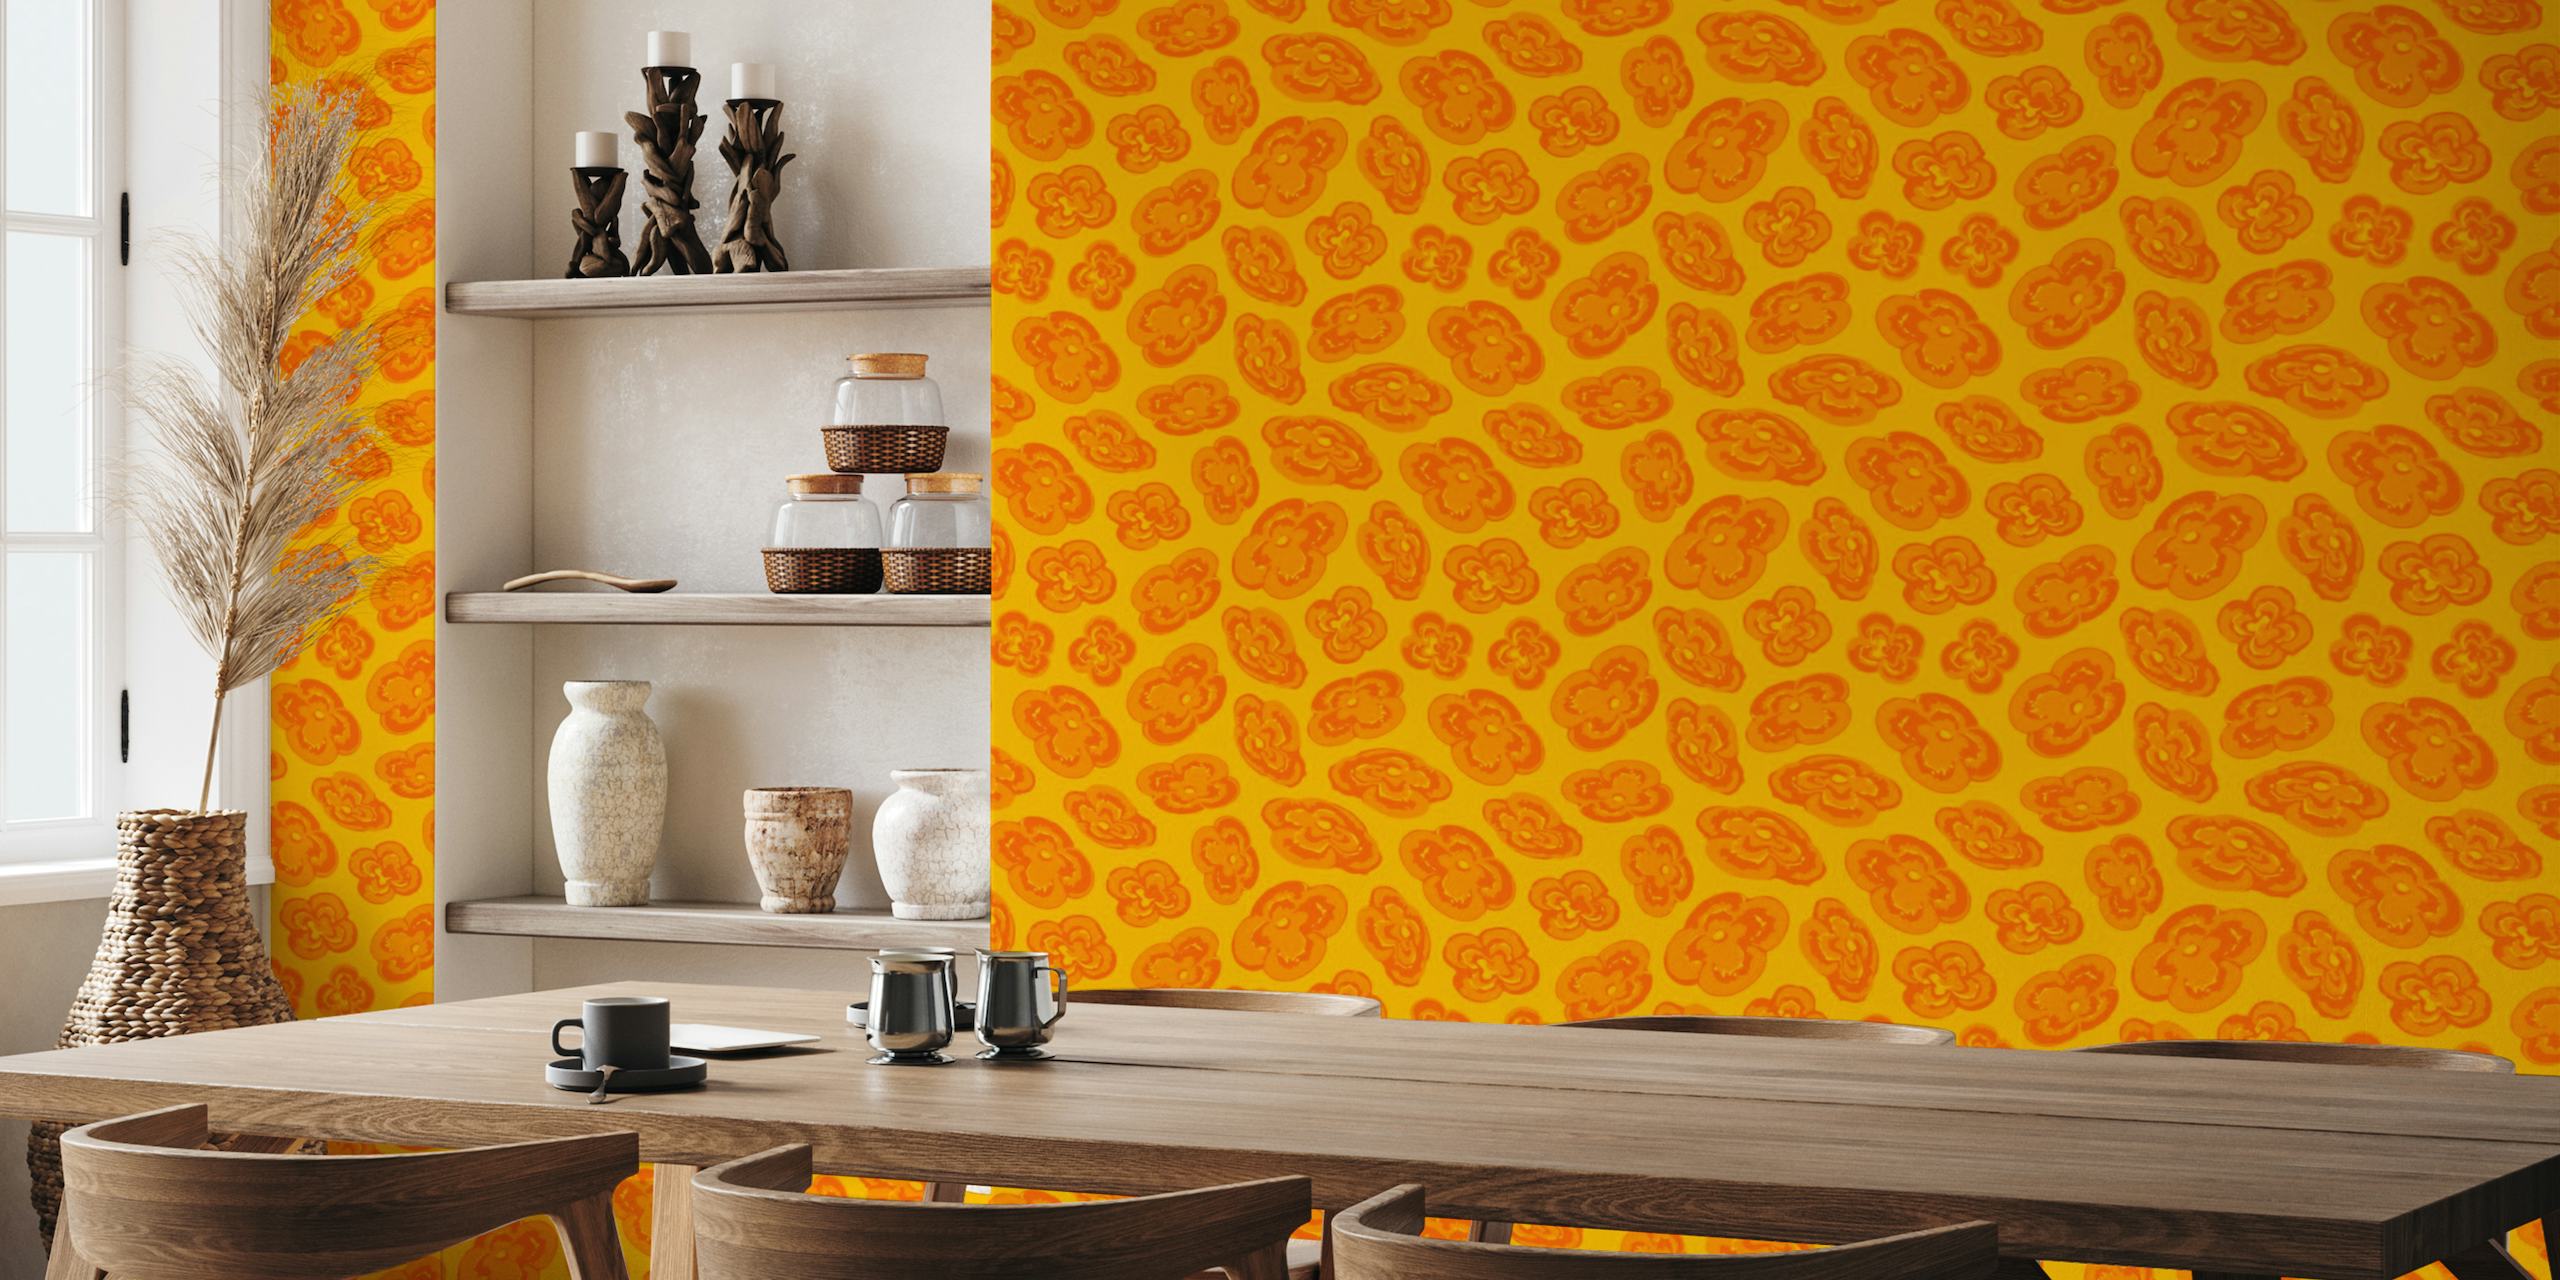 Fotomural amarillo abstracto con motivos de lirios naranjas para decoración del hogar